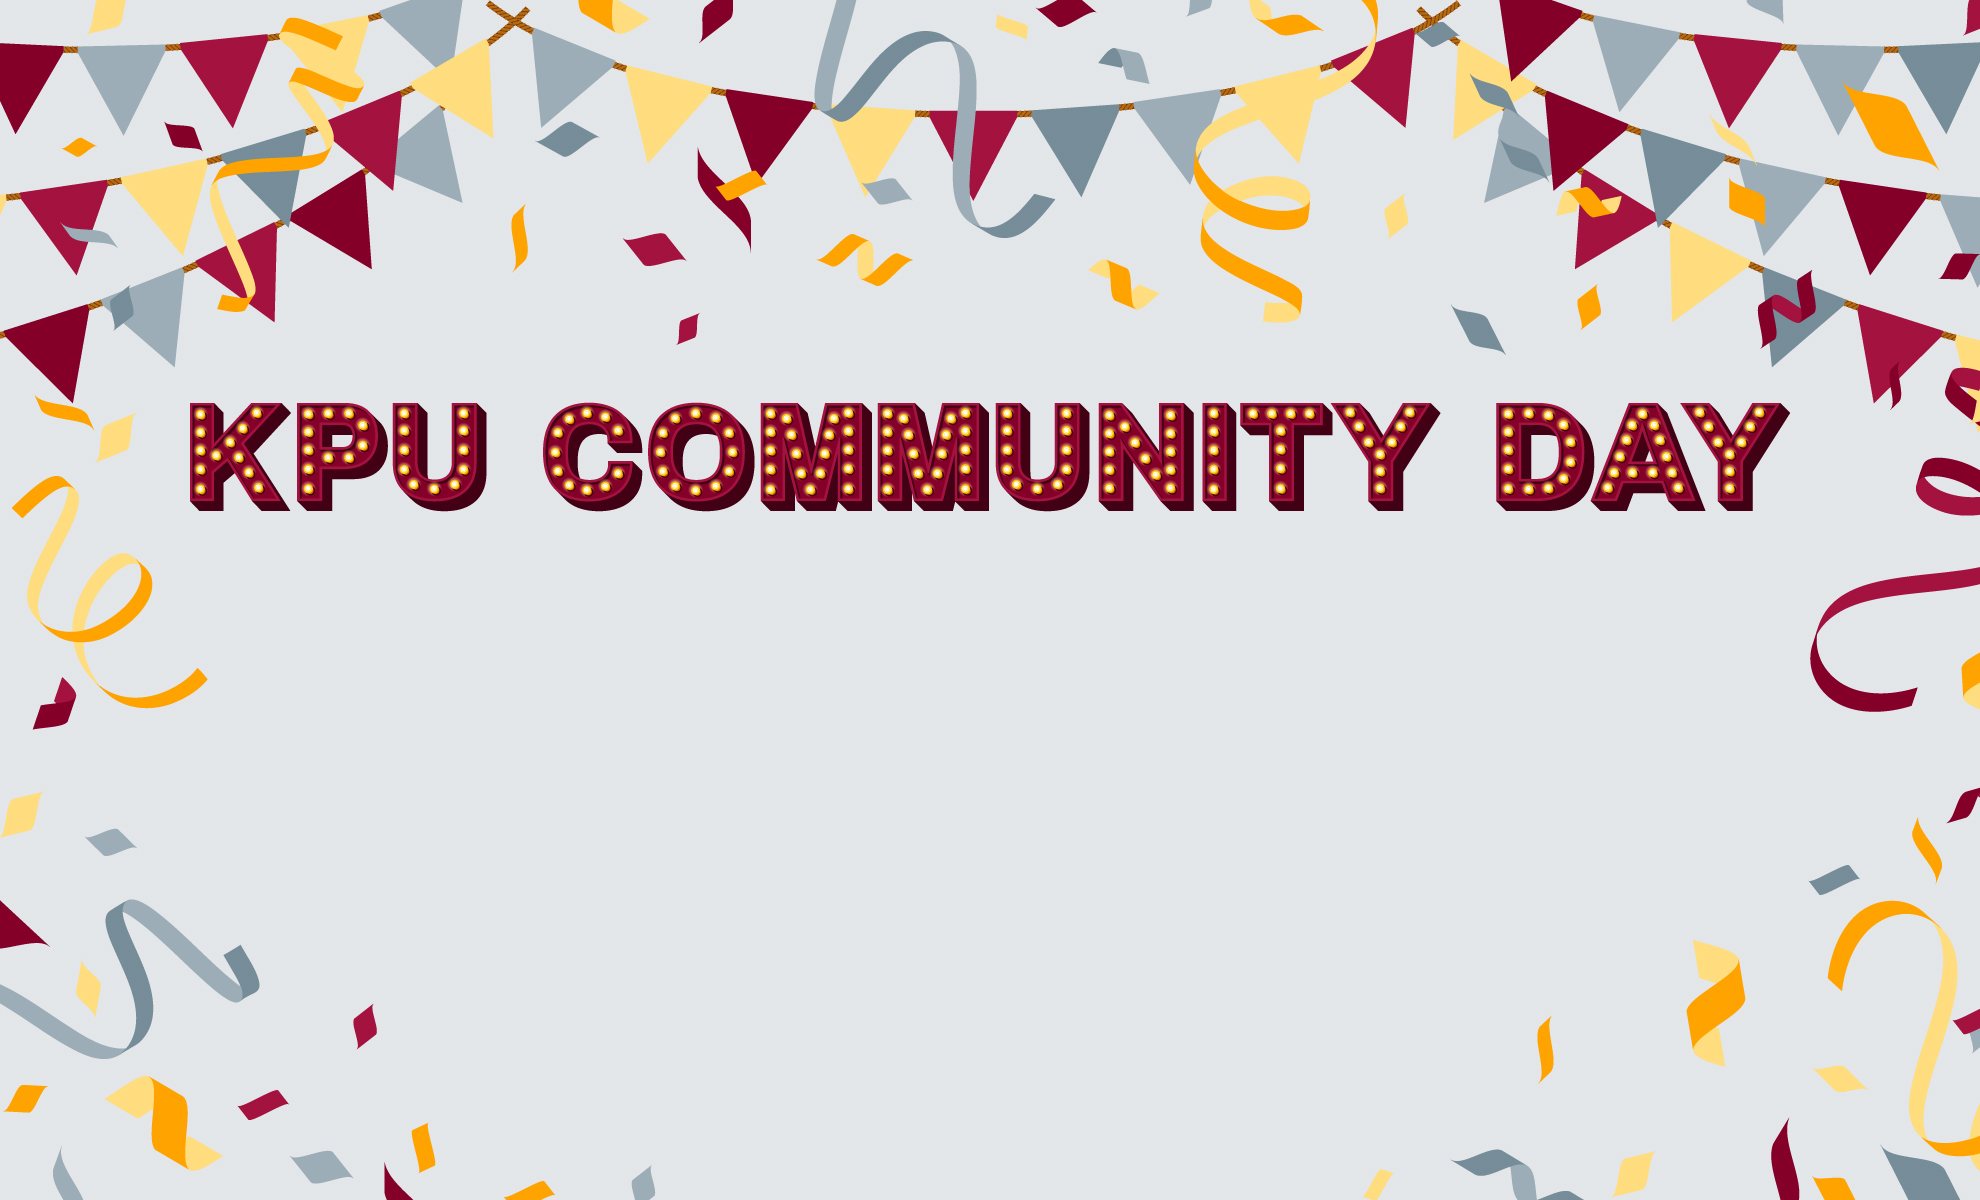 KPU Community Day